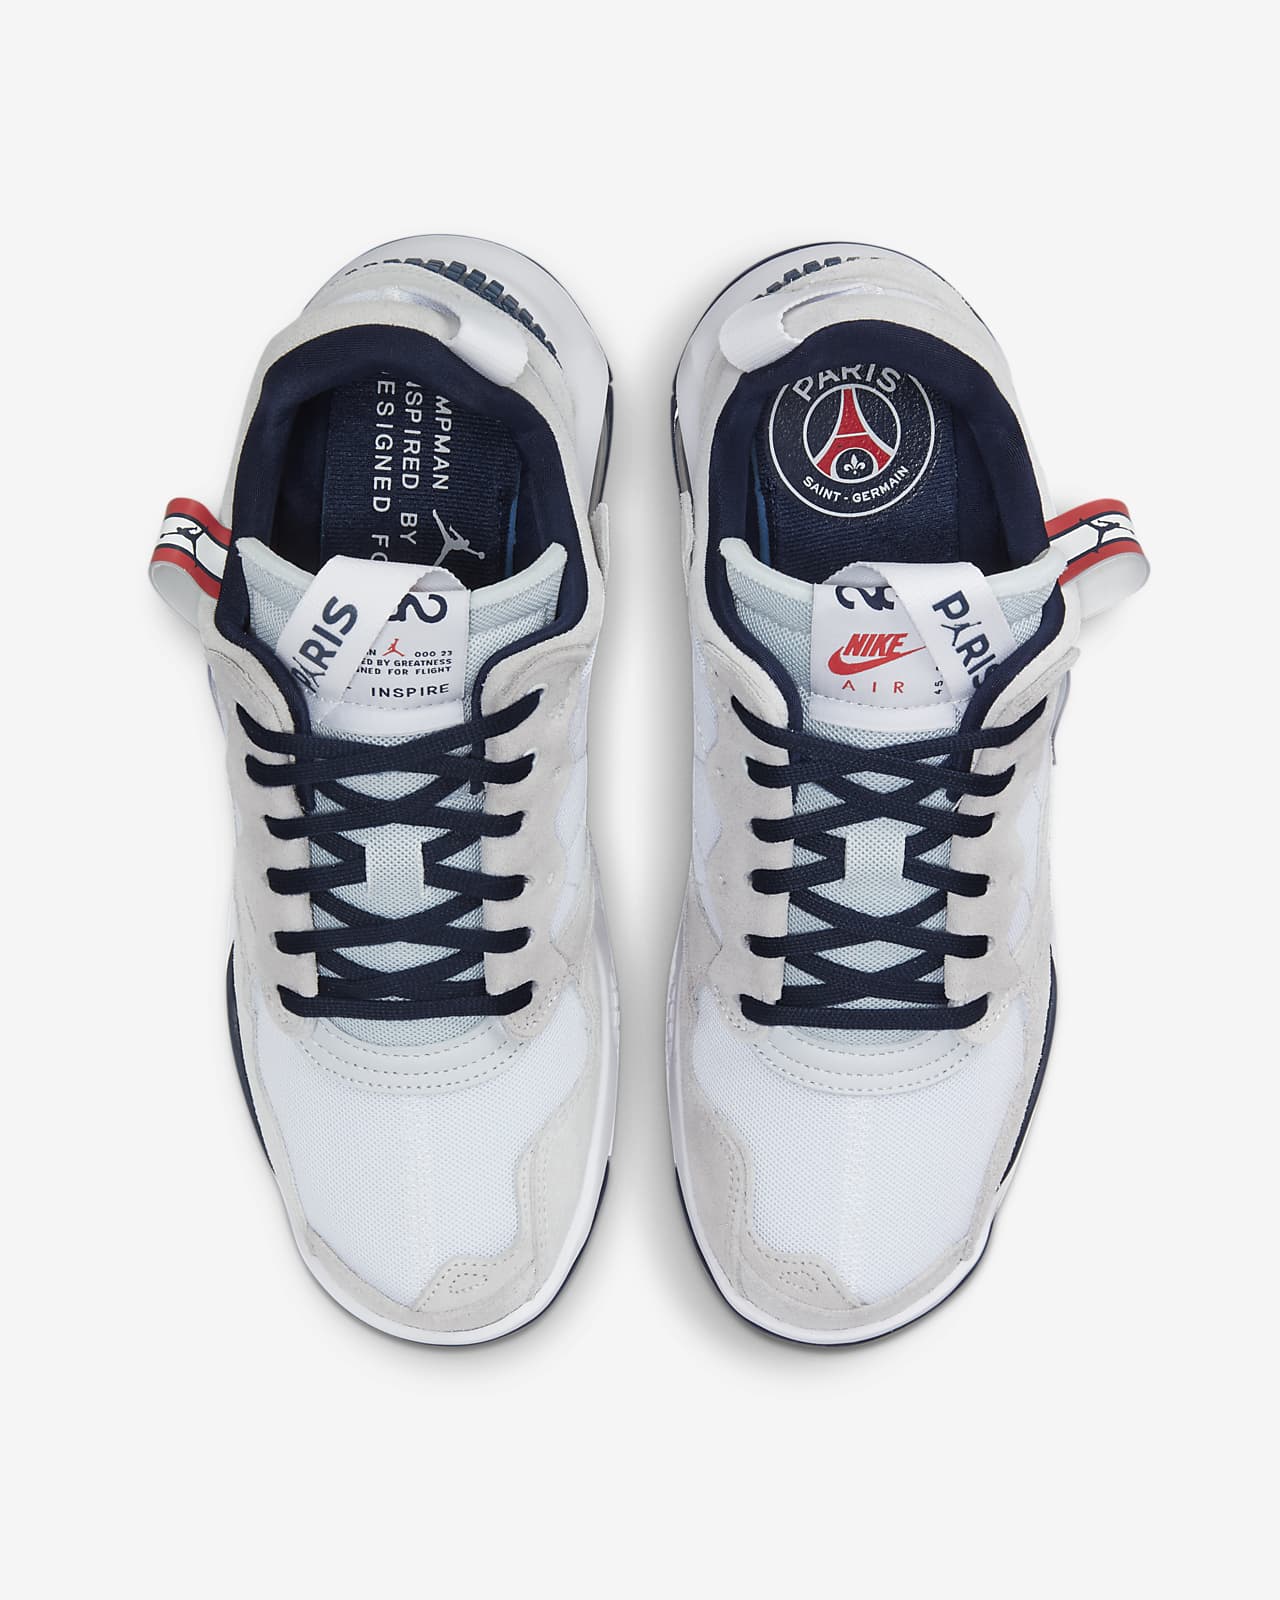 Jordan Ma2 Paris Saint Germain Shoes Nike Nl